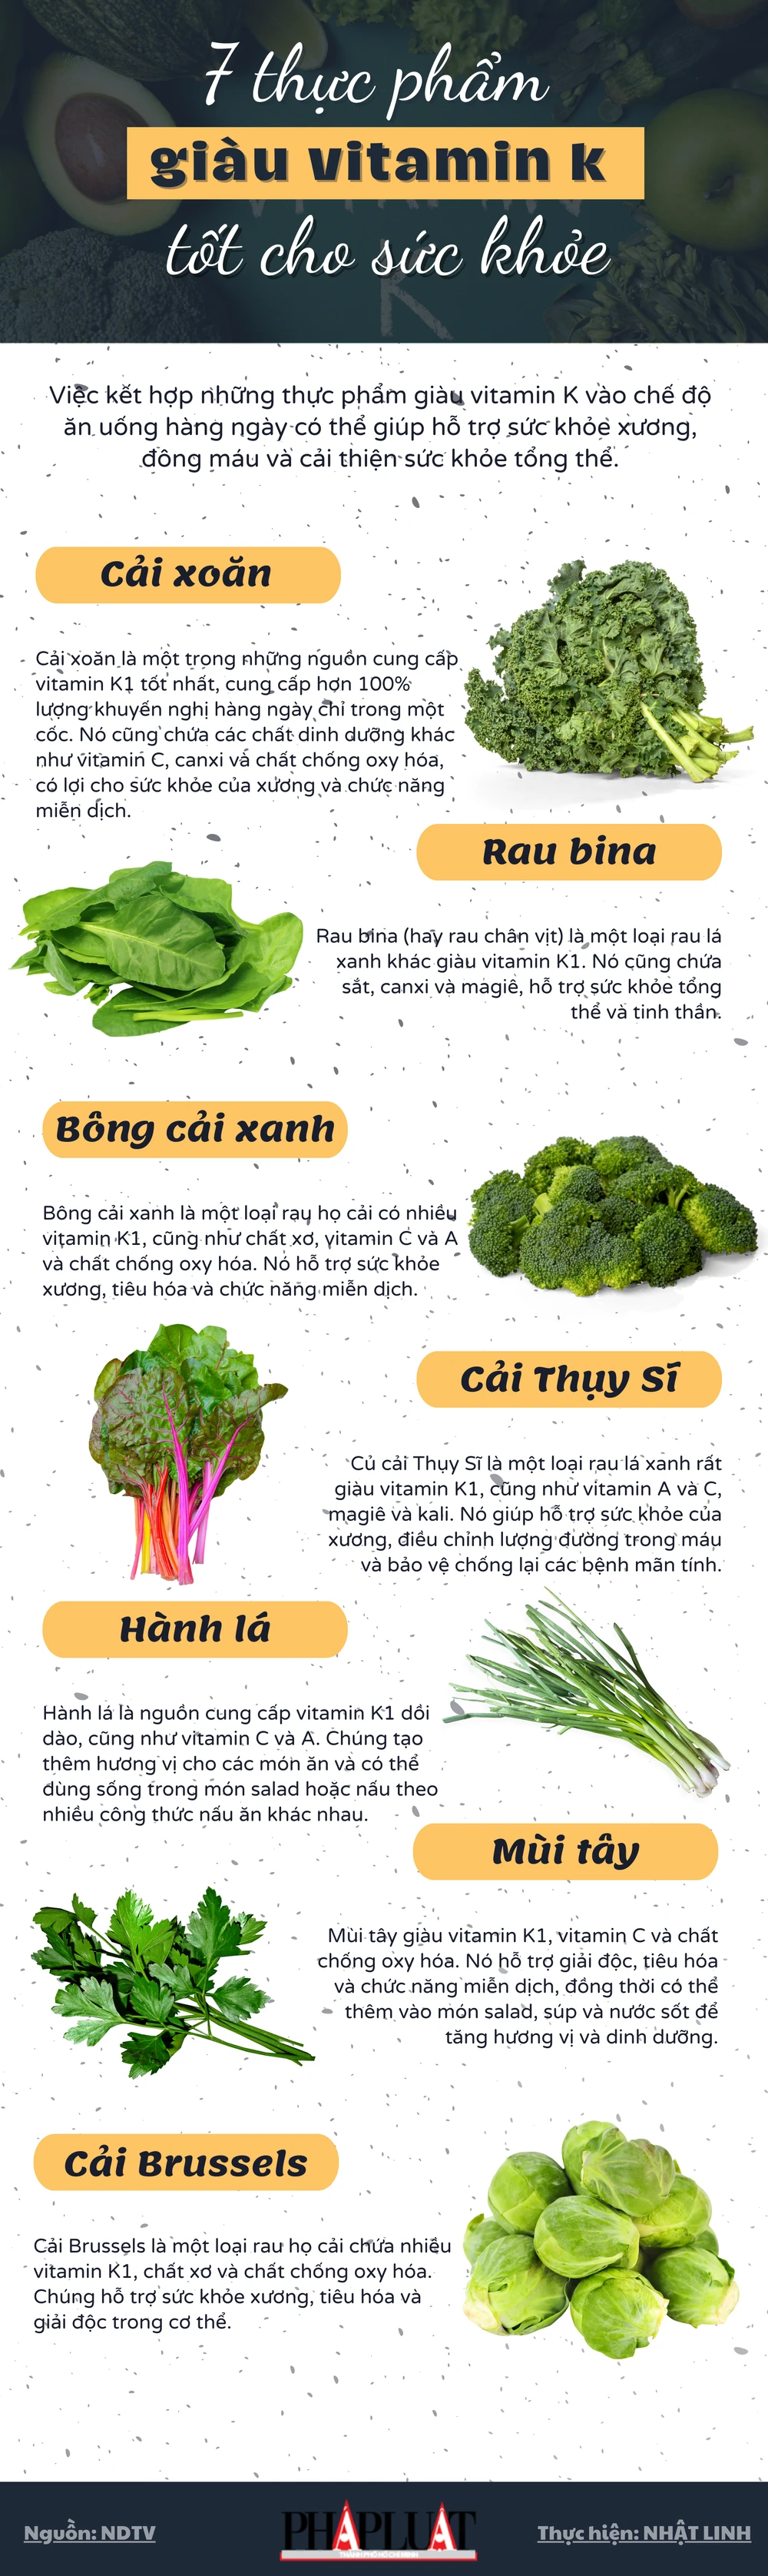 7 thực phẩm giàu vitamin K tốt cho sức khỏe